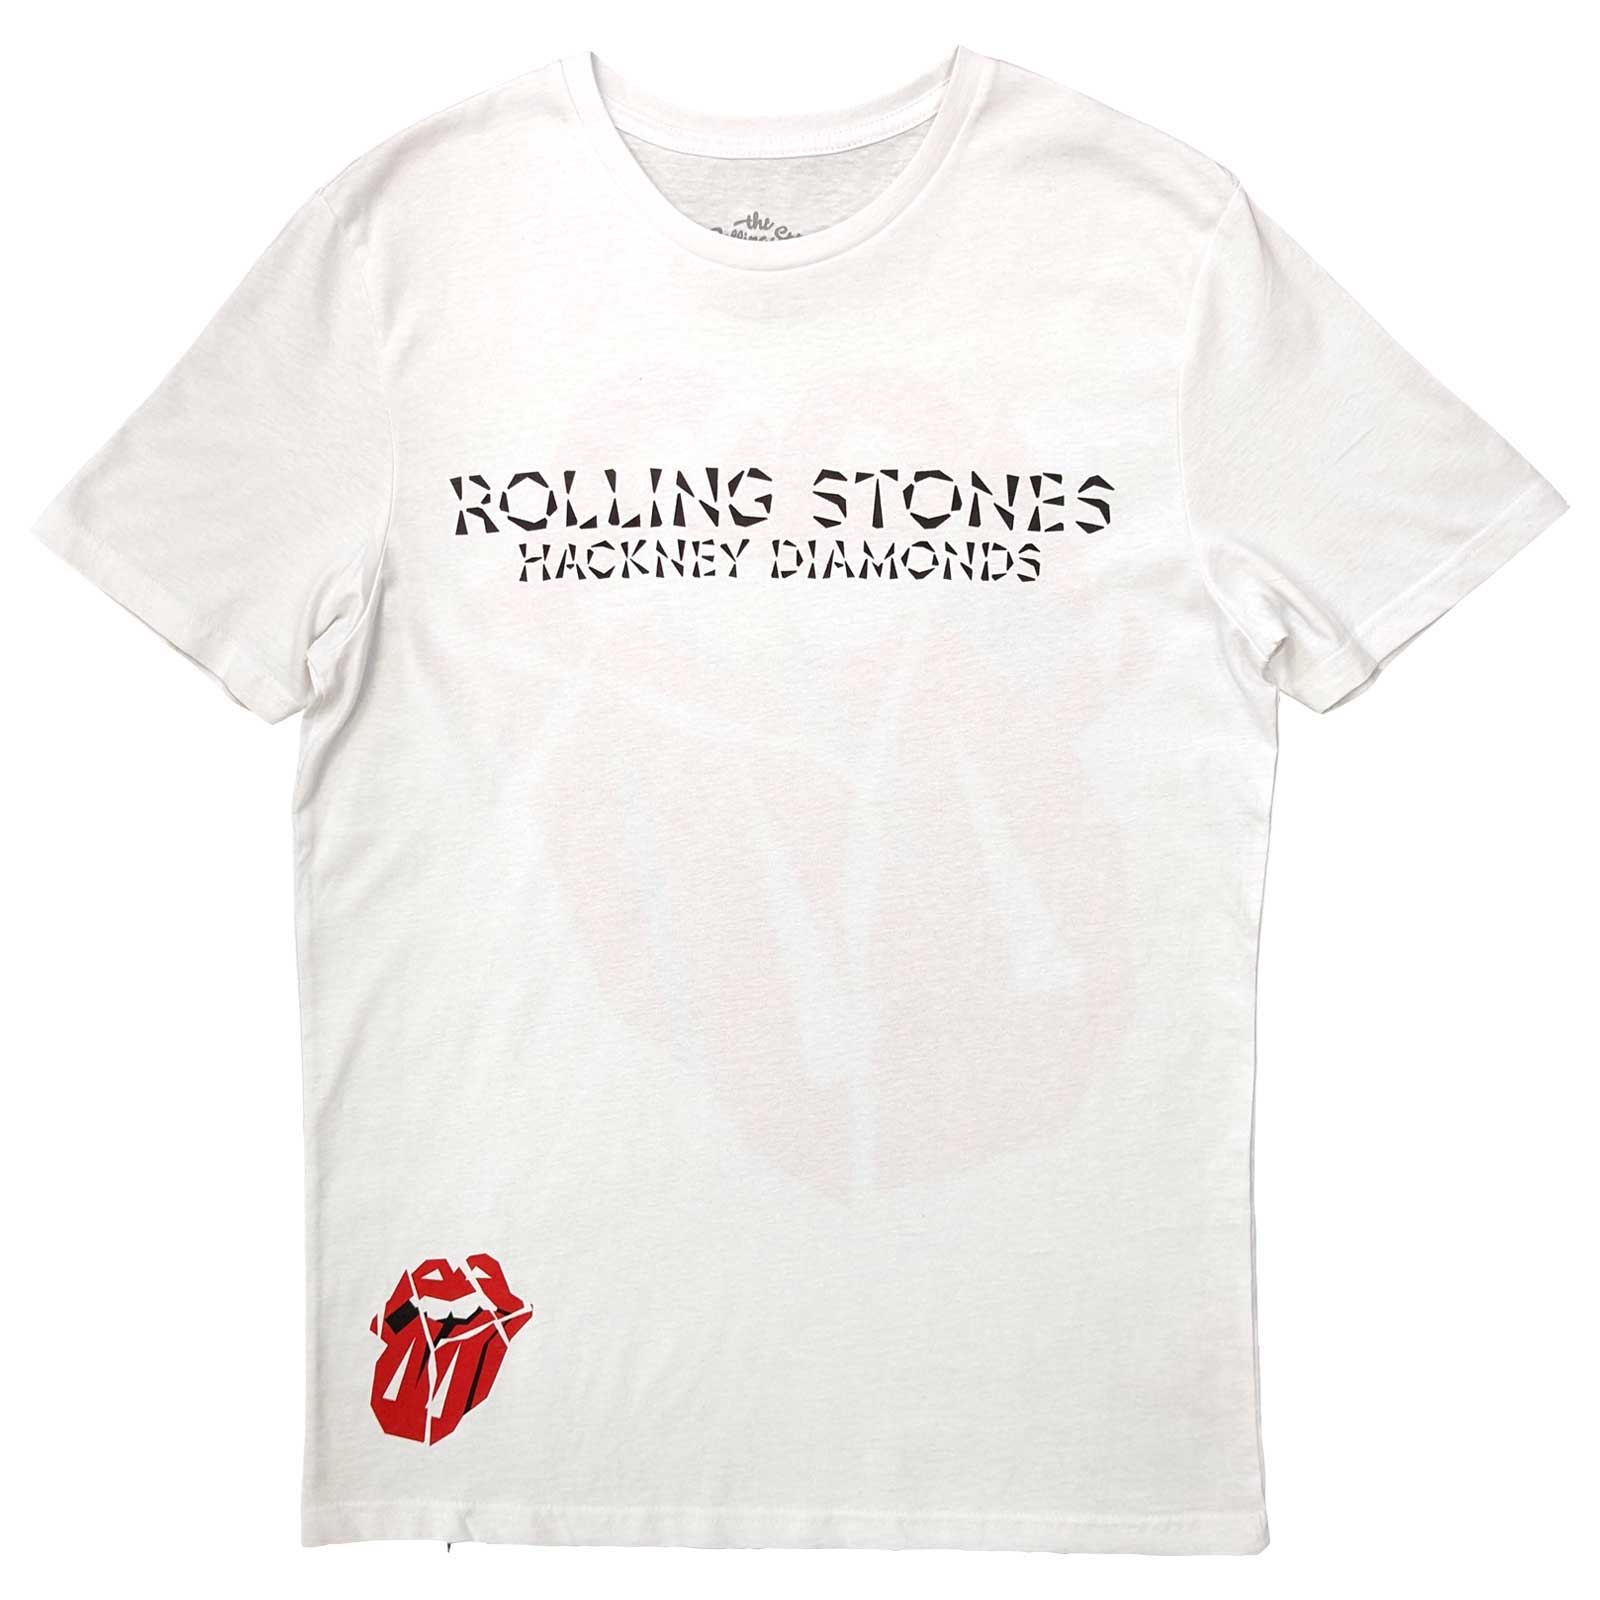 The Rolling Stones T-Shirt für Erwachsene – Hackney Diamonds Lick (Rückendruck), weiß, offiziell lizenziertes Design